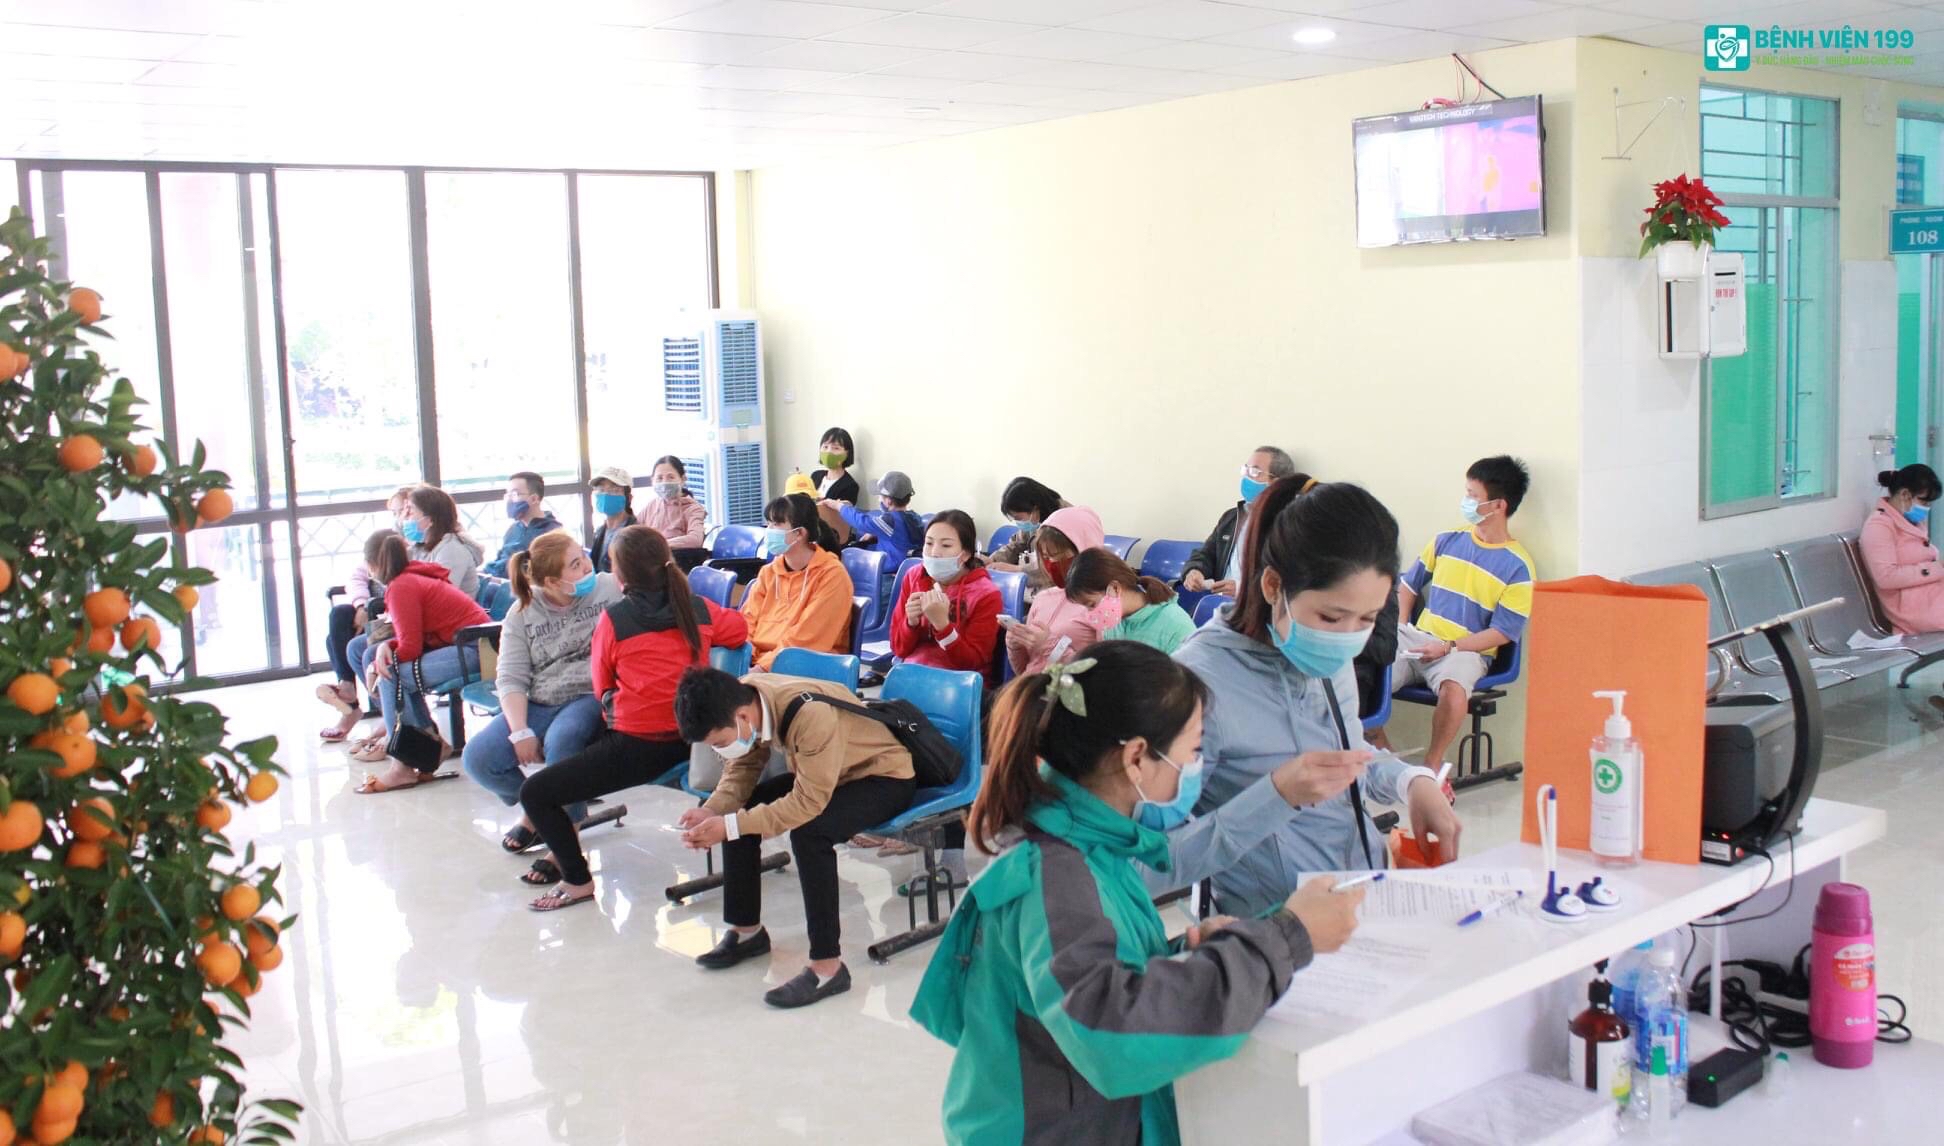 Gói khám sức khoẻ tại Bệnh viện 199 - Bộ công an Đà Nẵng